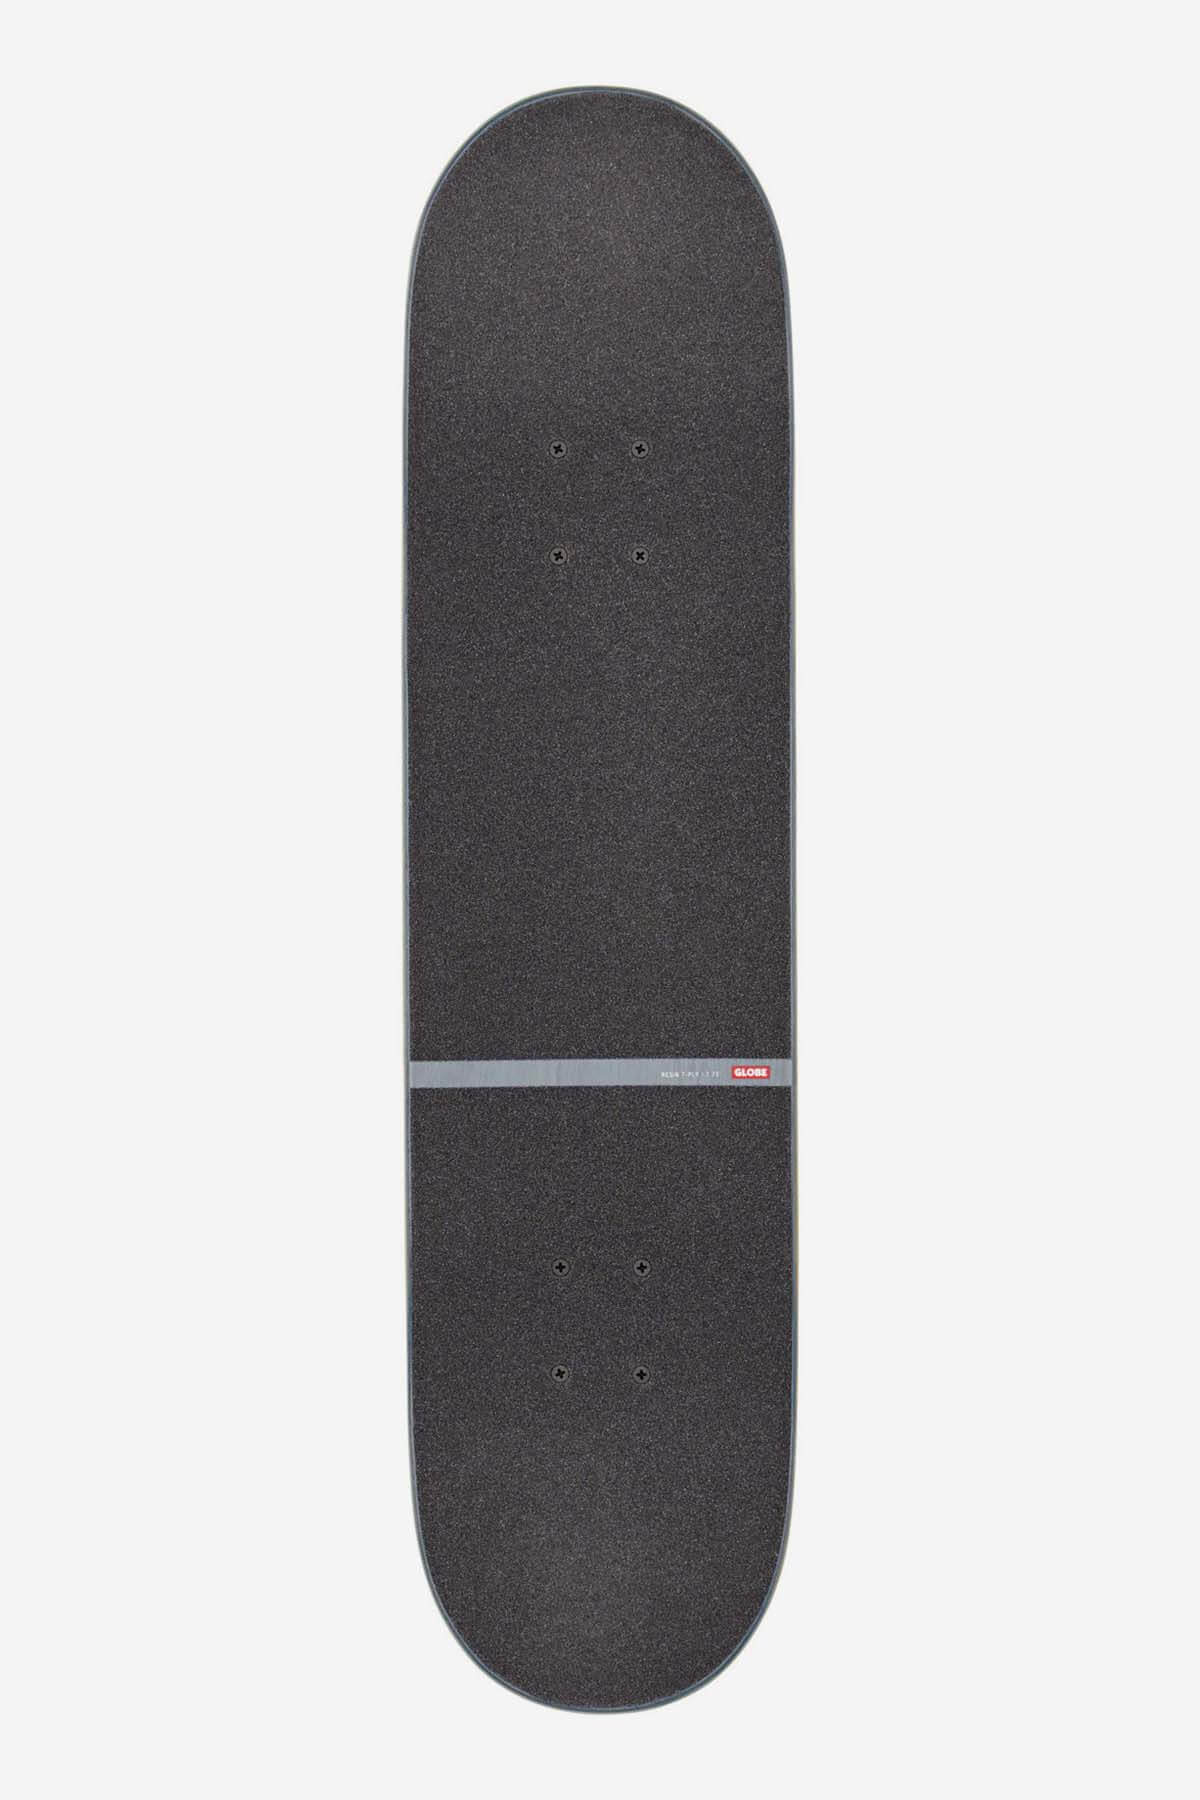 Globe - G1 D Stack- Blue/Orange - 7.75" Complete Skateboard